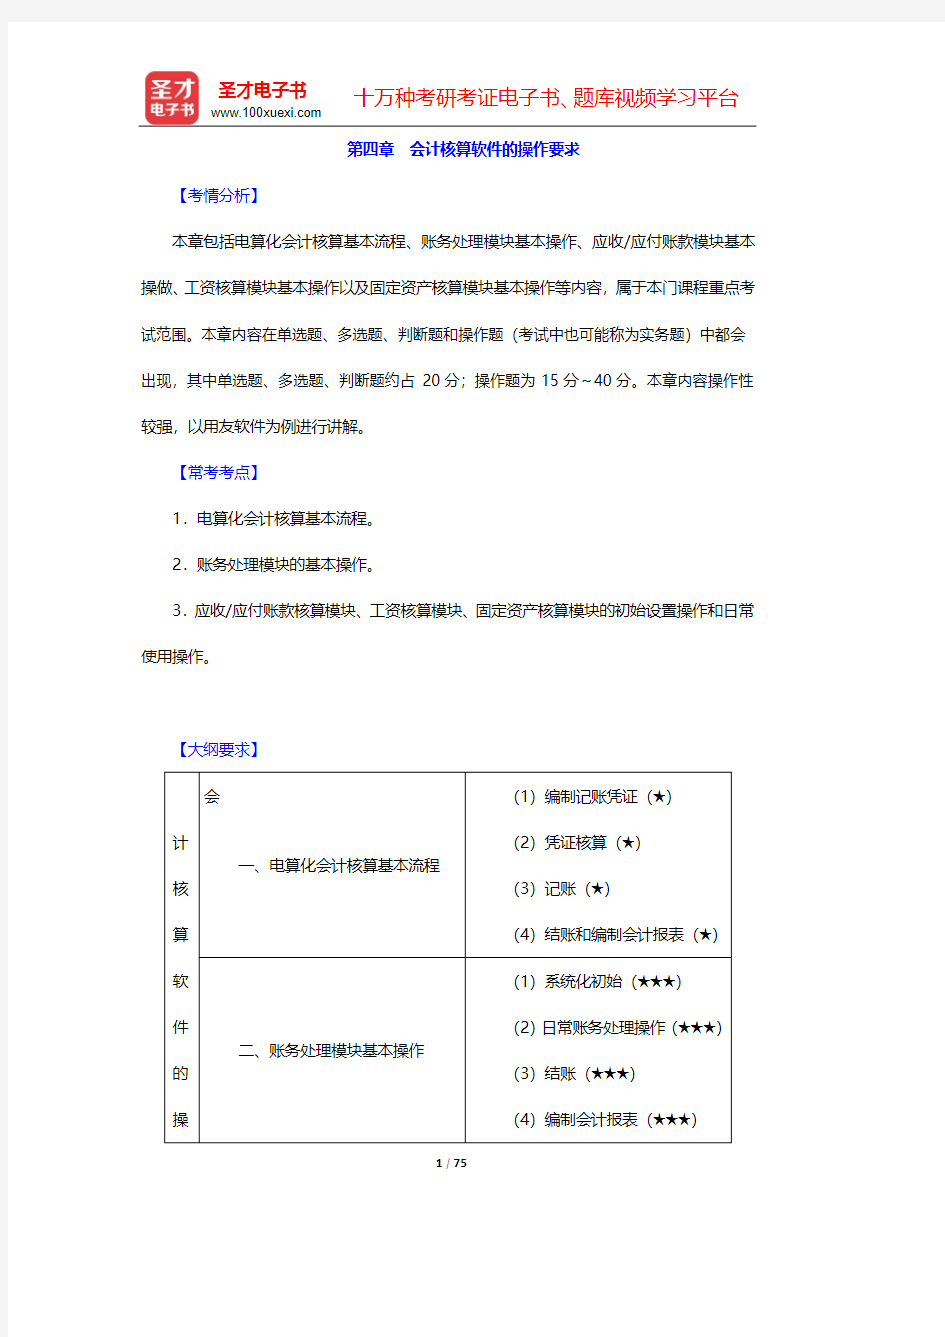 重庆市会计从业资格考试《初级会计电算化》核心讲义-第四章及附录【圣才出品】